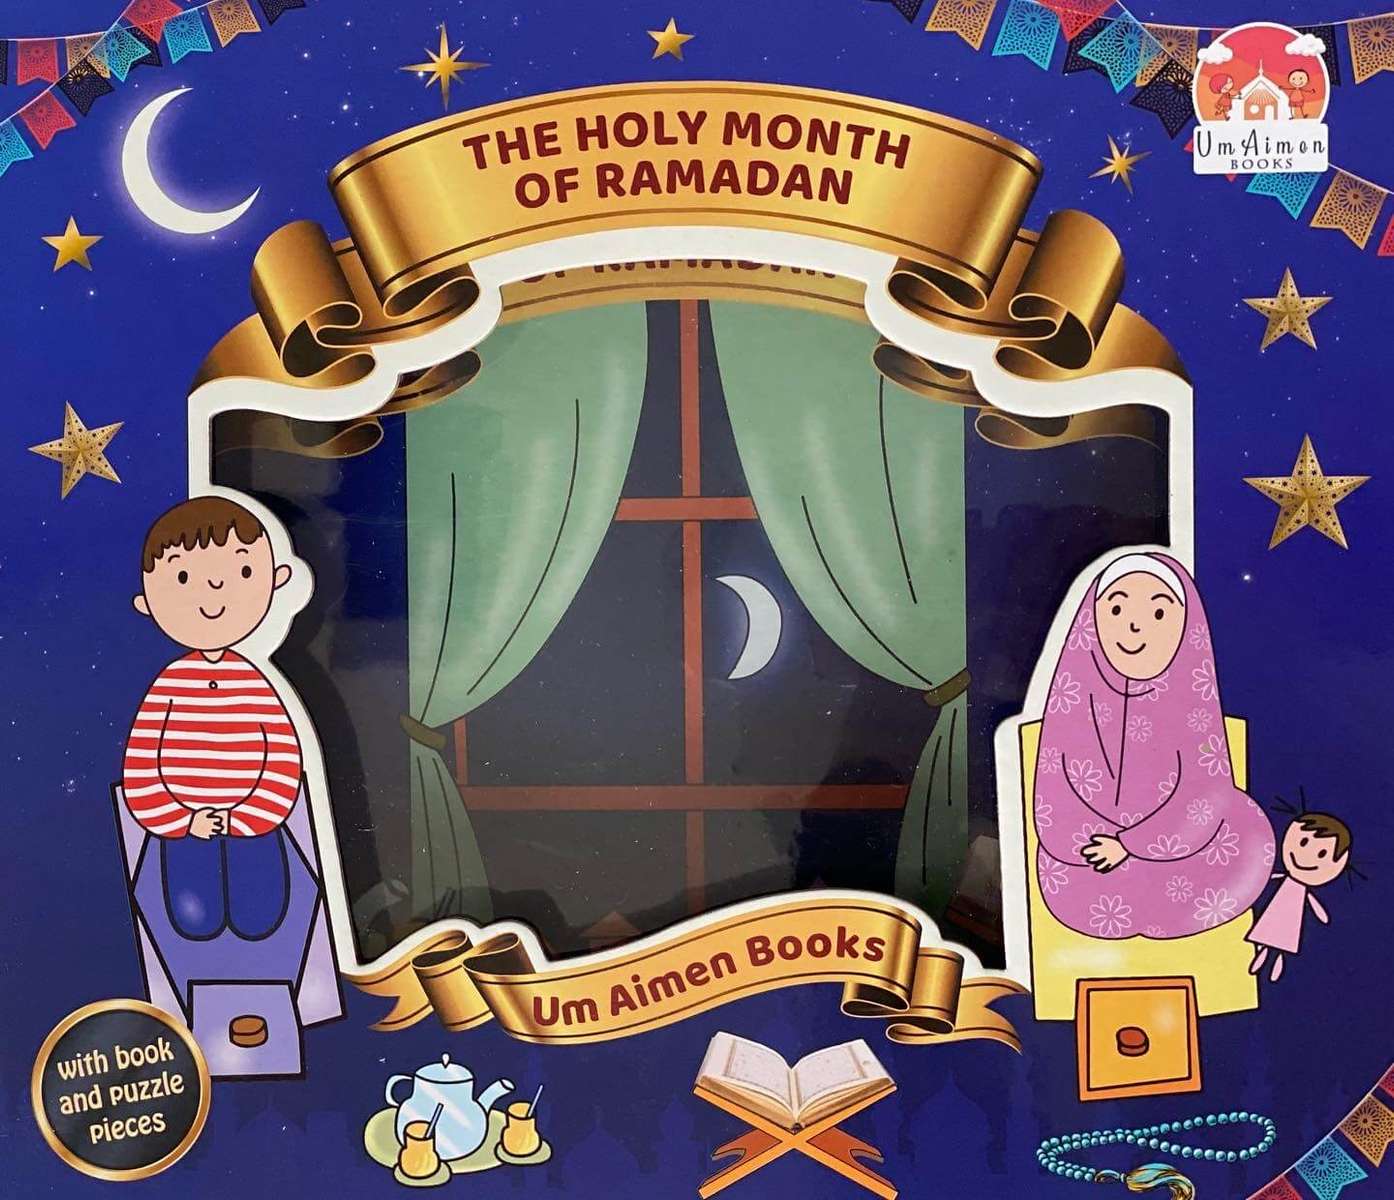 RamadãJogo puzzle online a partir de fotografia